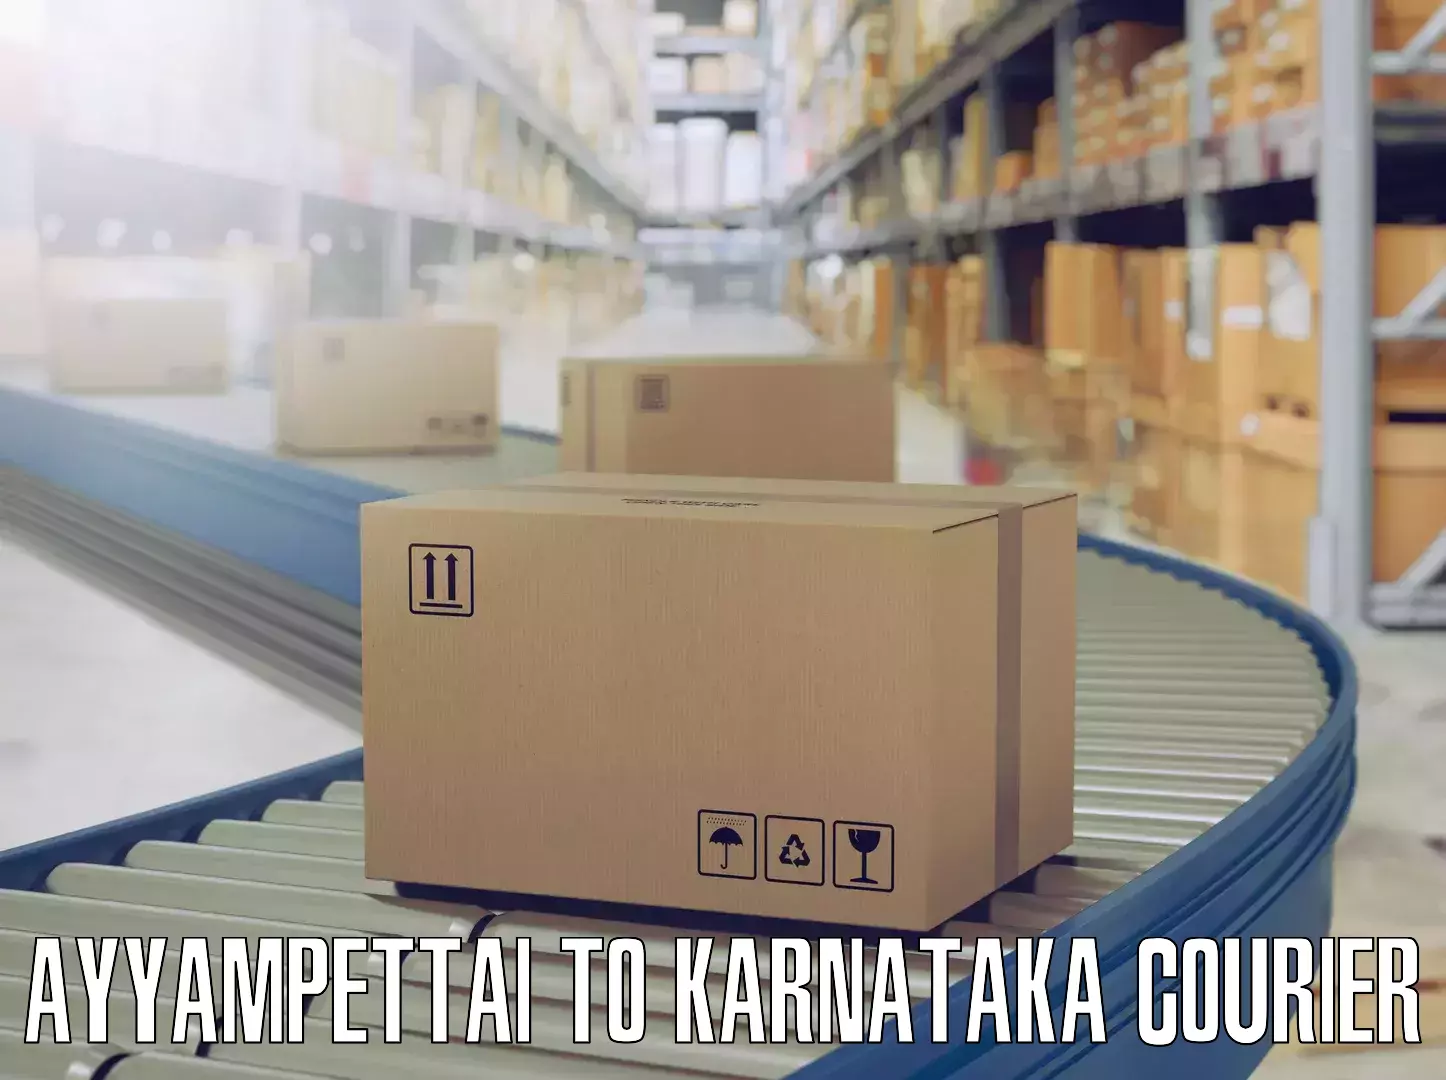 Efficient moving company Ayyampettai to Karnataka